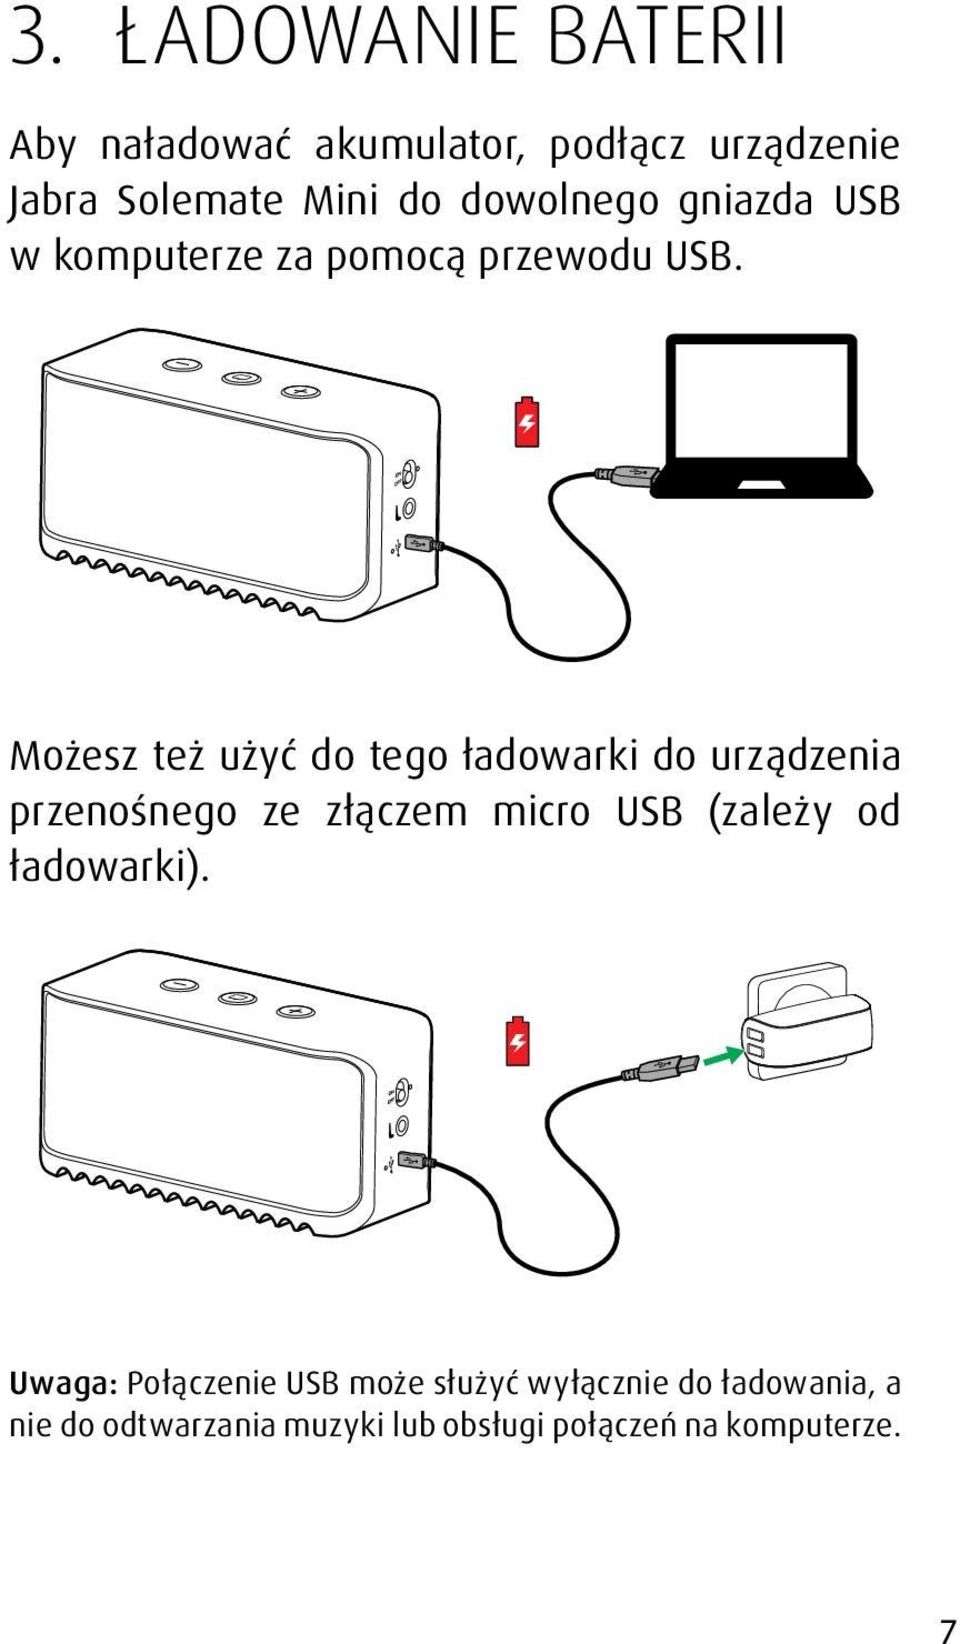 Możesz też użyć do tego ładowarki do urządzenia przenośnego ze złączem micro USB (zależy od